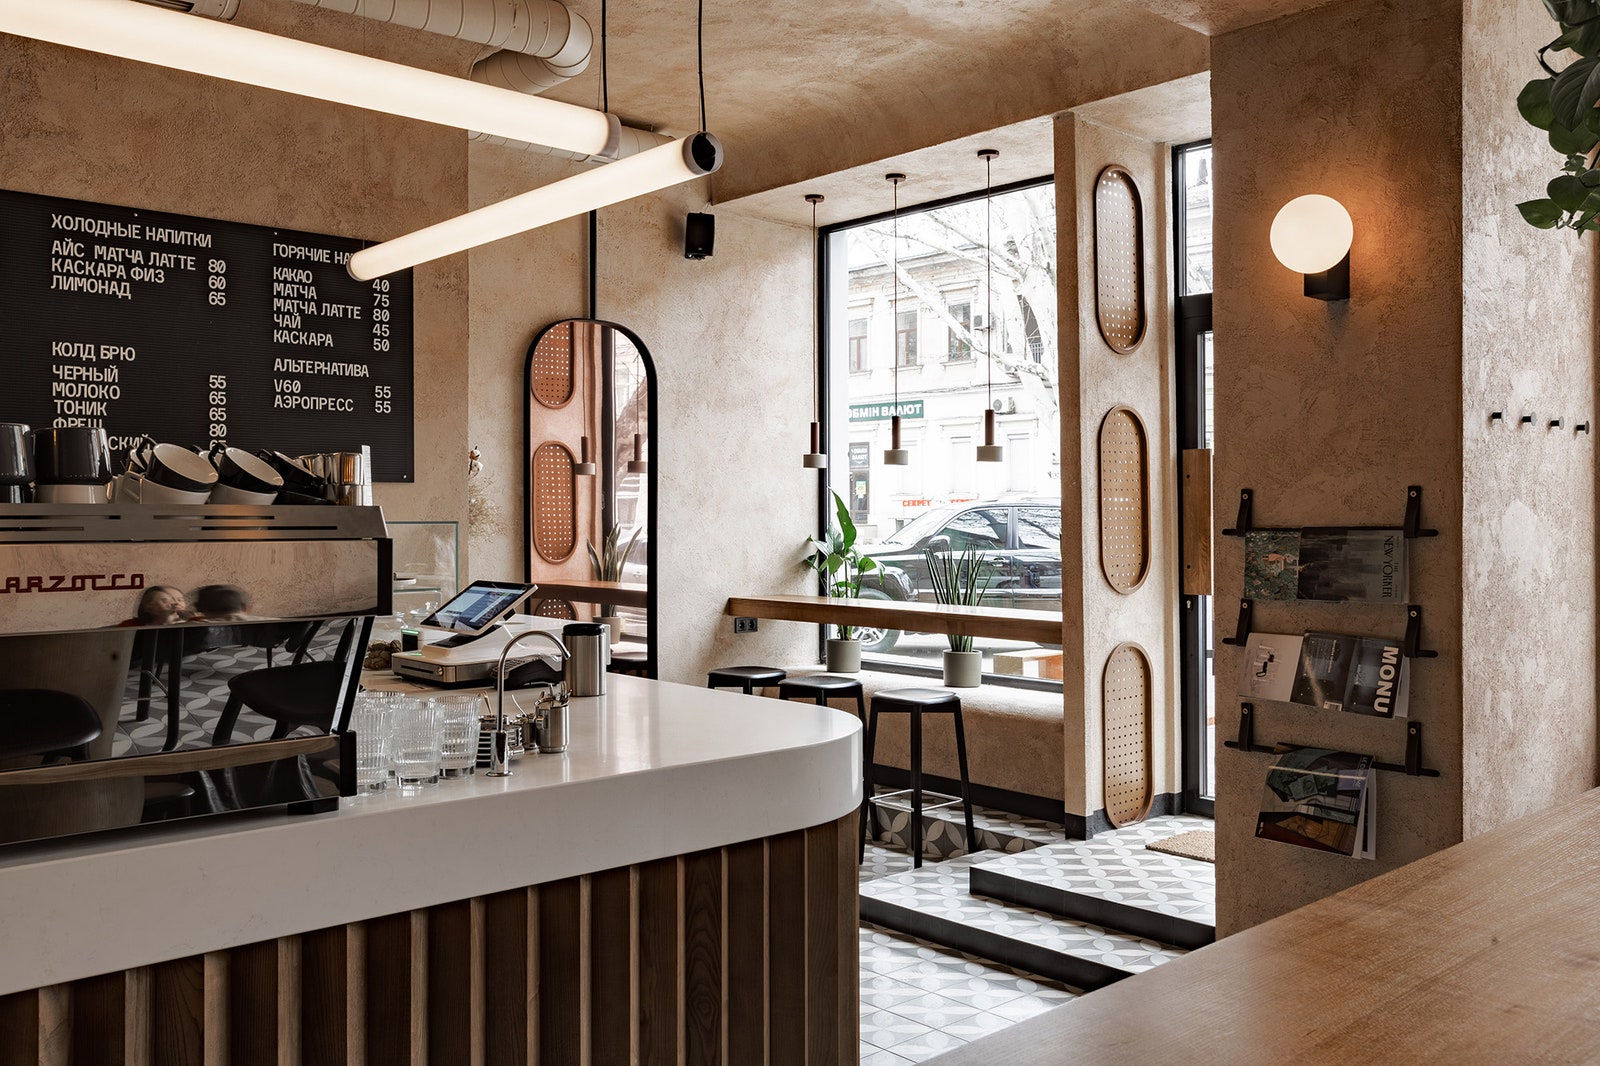 Интерьер новой кофейни в Одессе  дизайн одесского кафе Dailу от Sivak  Partners